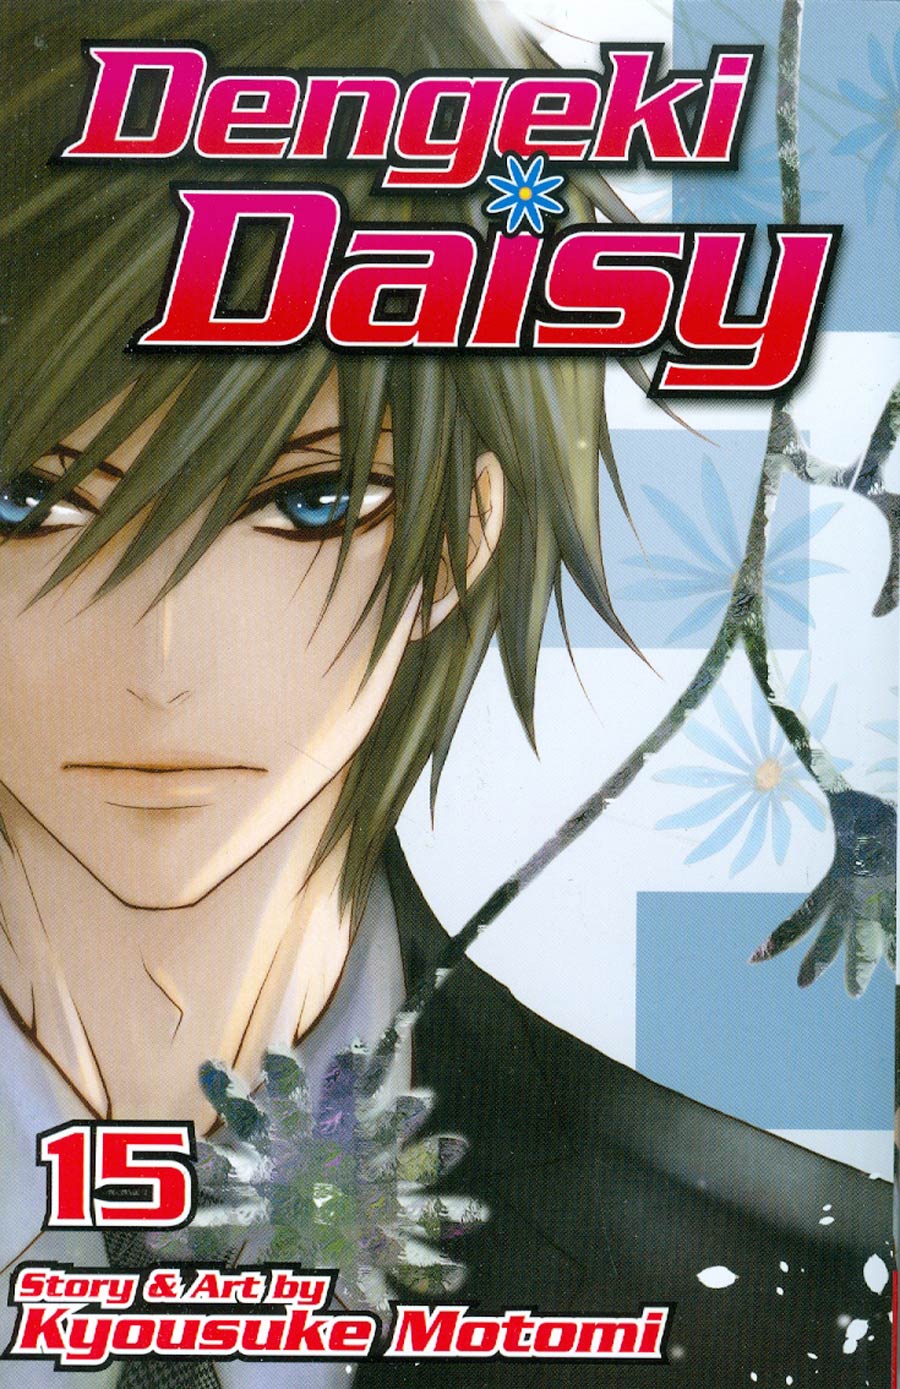 Dengeki Daisy Vol 15 TP